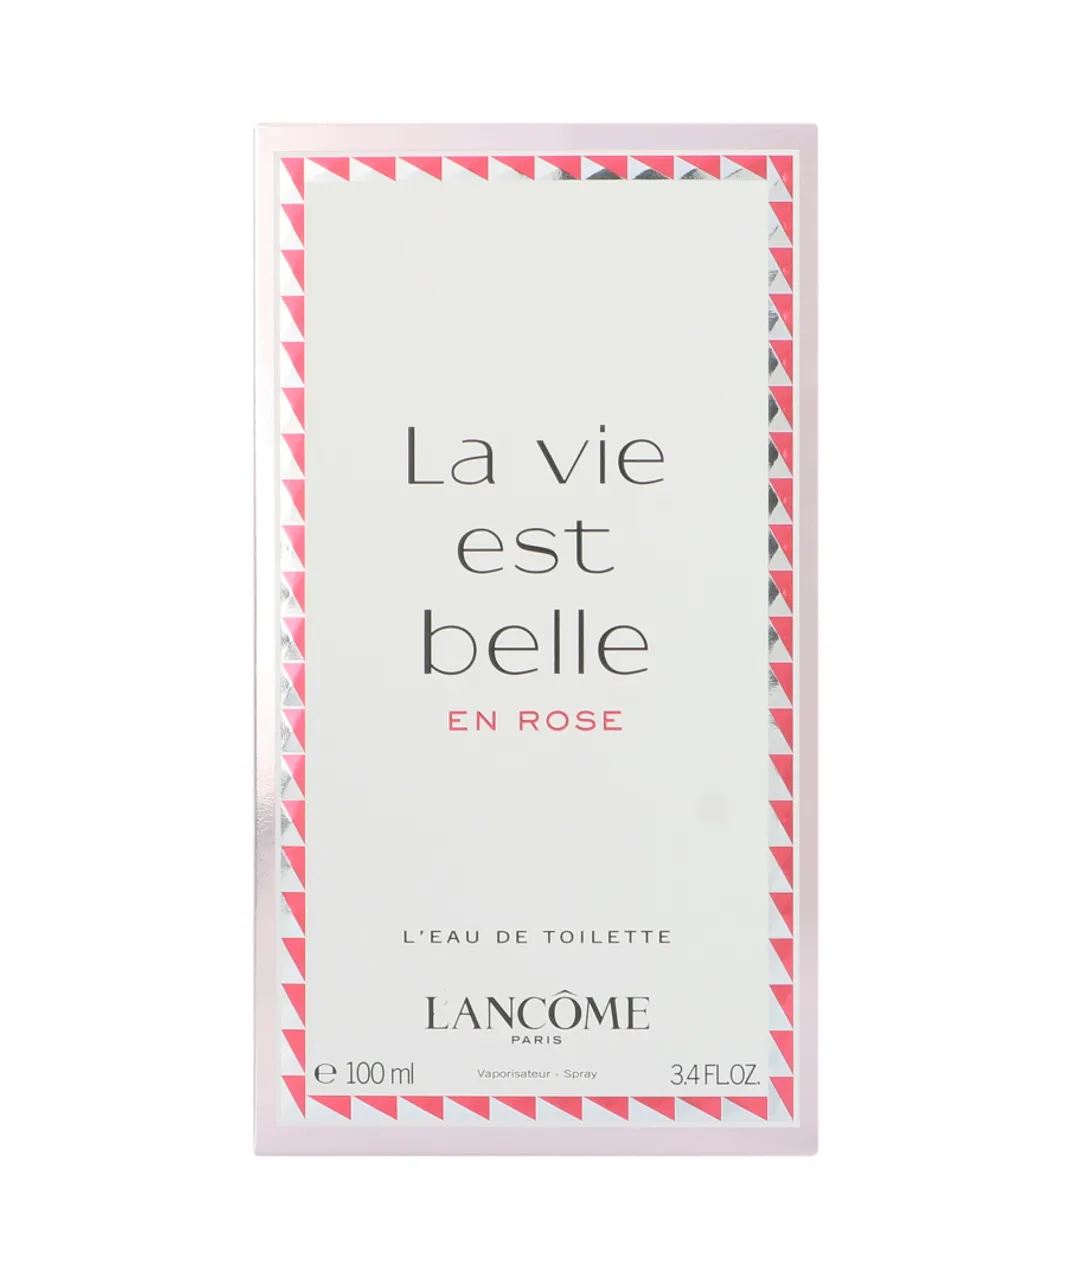 Lancome Womens Lancôme La Vie Est Belle En Rose Eau de Toilette 100ml - One Size